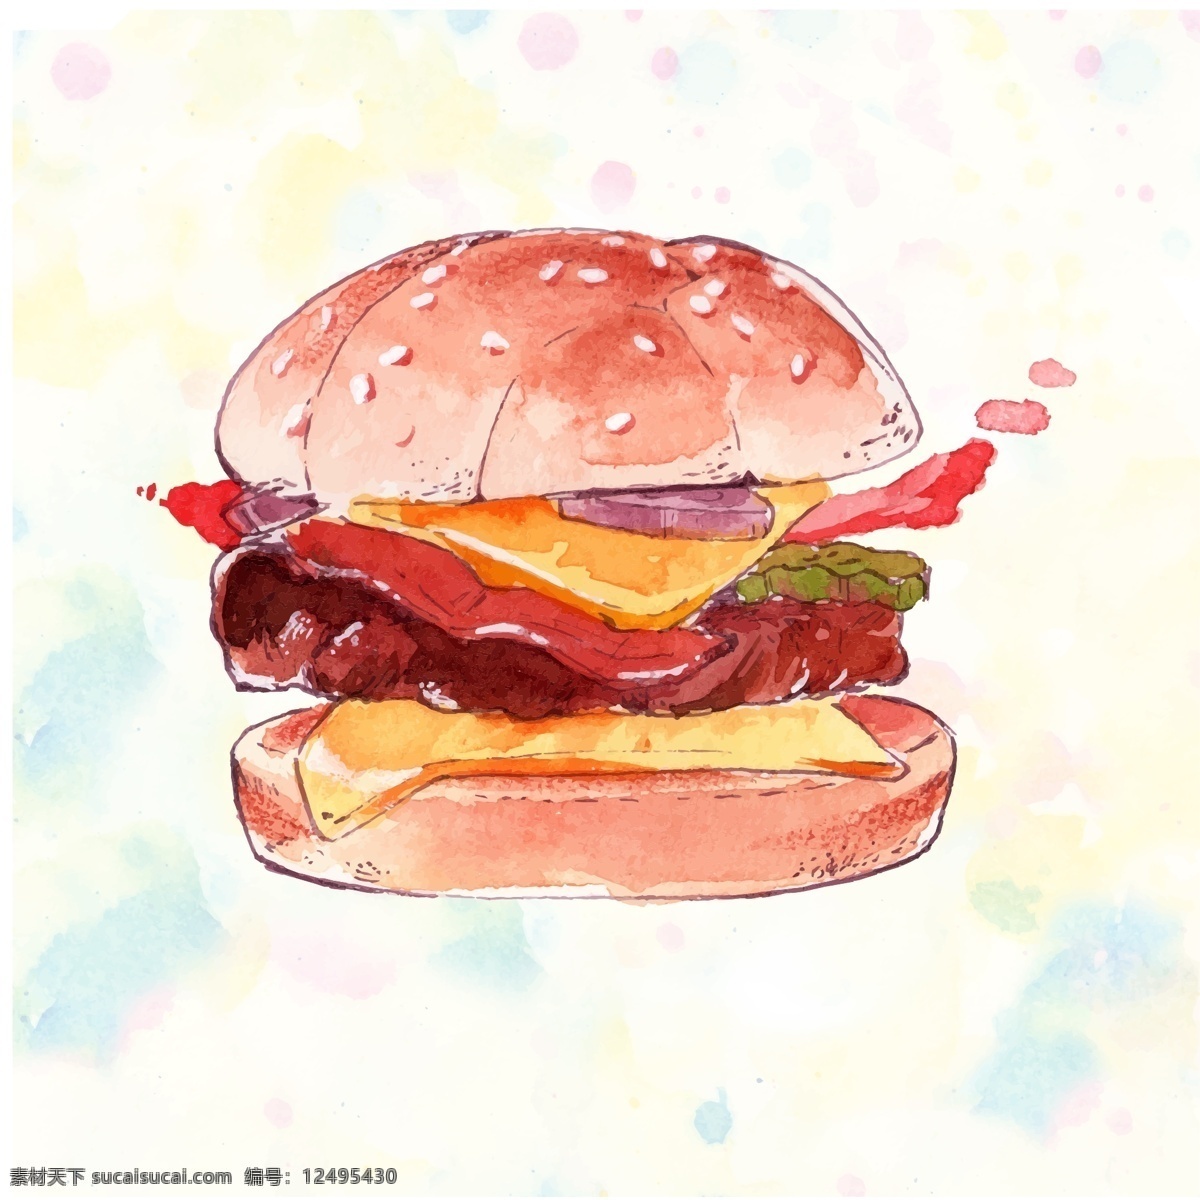 水彩 绘 美味 汉堡 插画 快餐 水彩绘 手绘